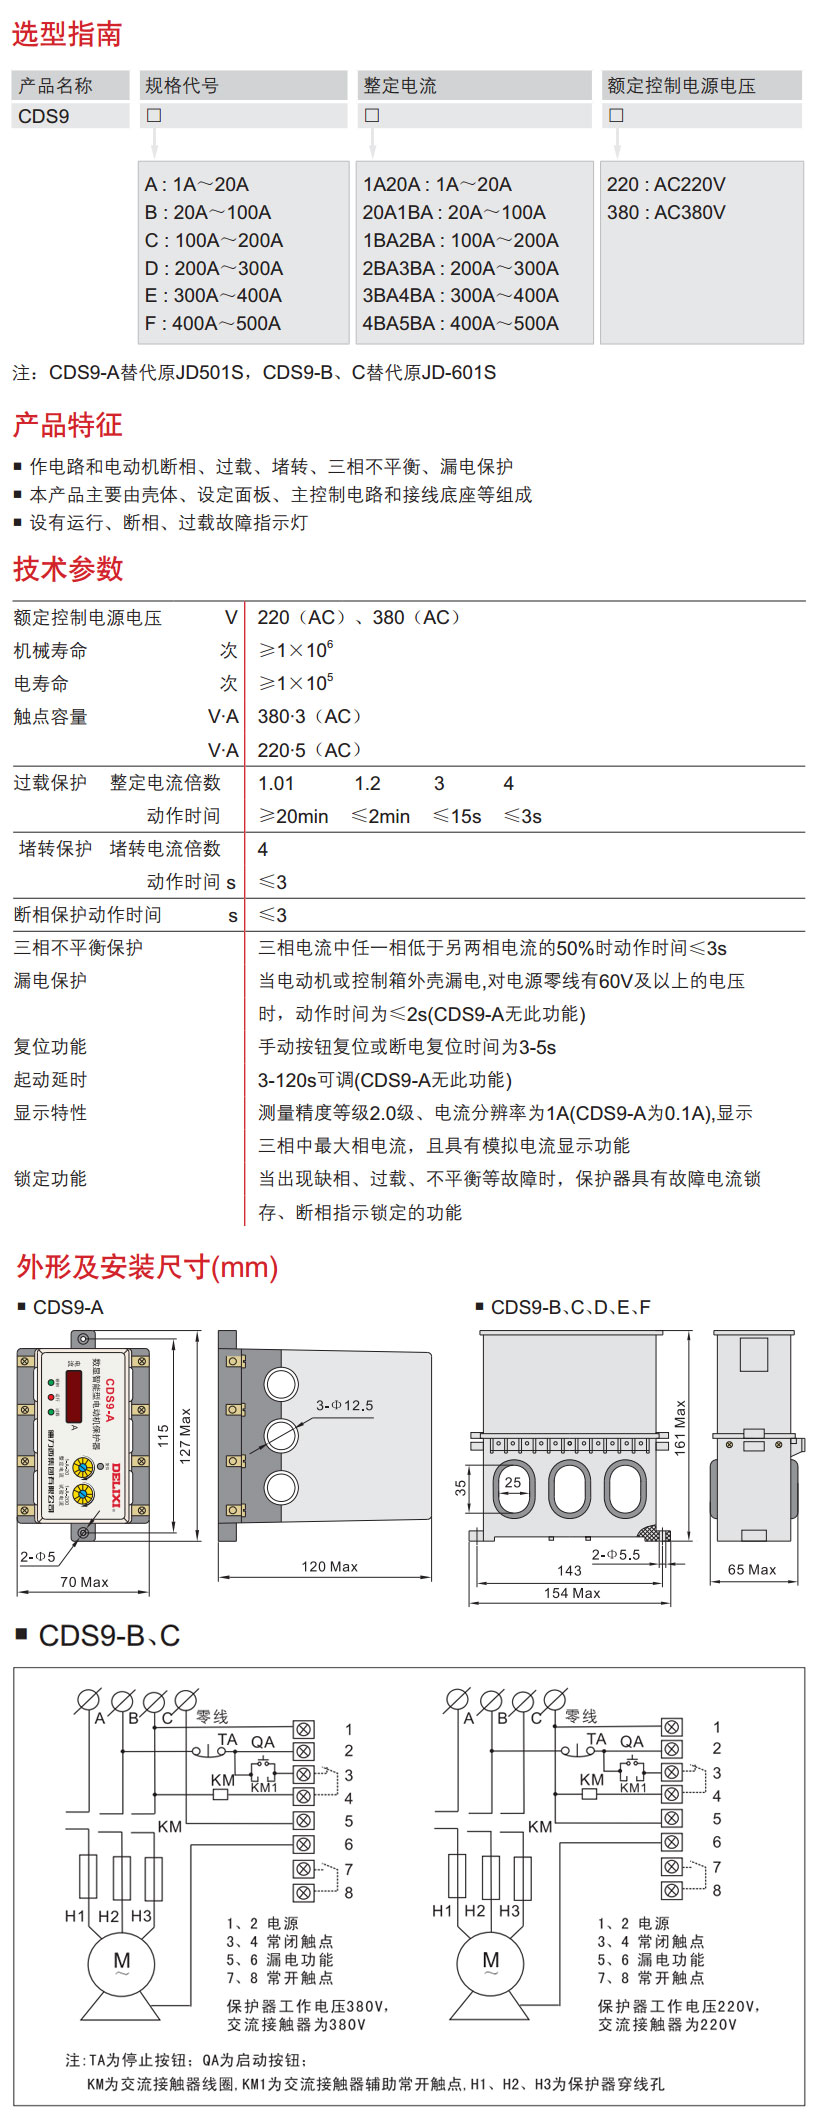 德力西CDS9-B数显智能电动机综合保护器选型手册和产品尺寸